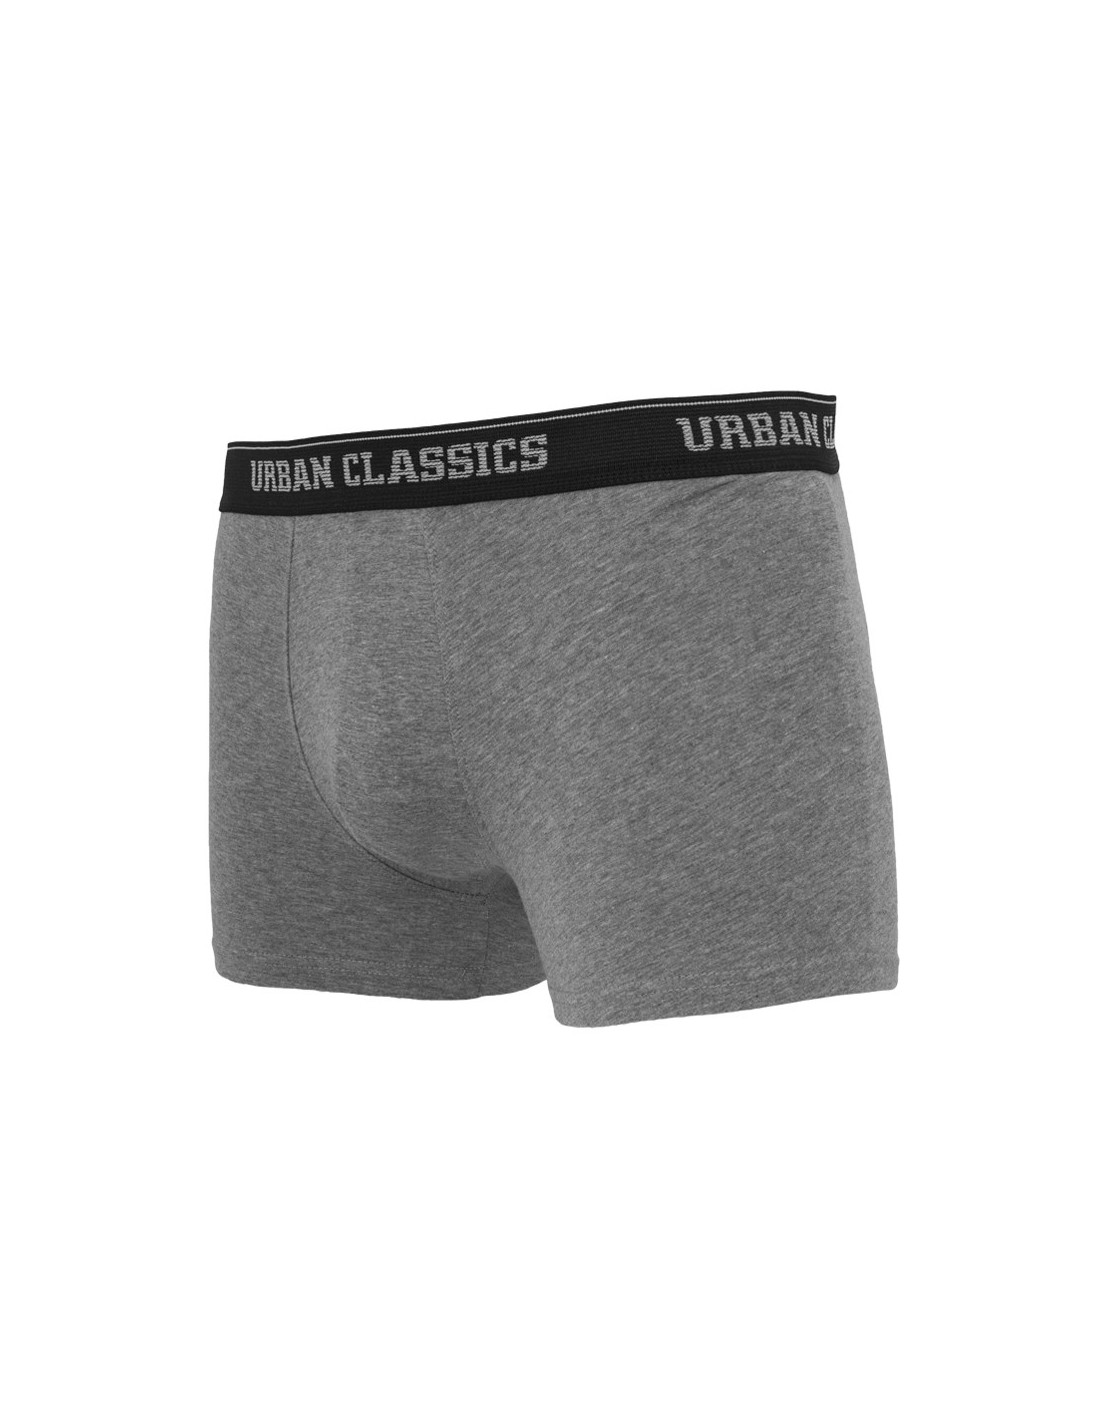 Urban Classics Mens Boxer Shorts grey